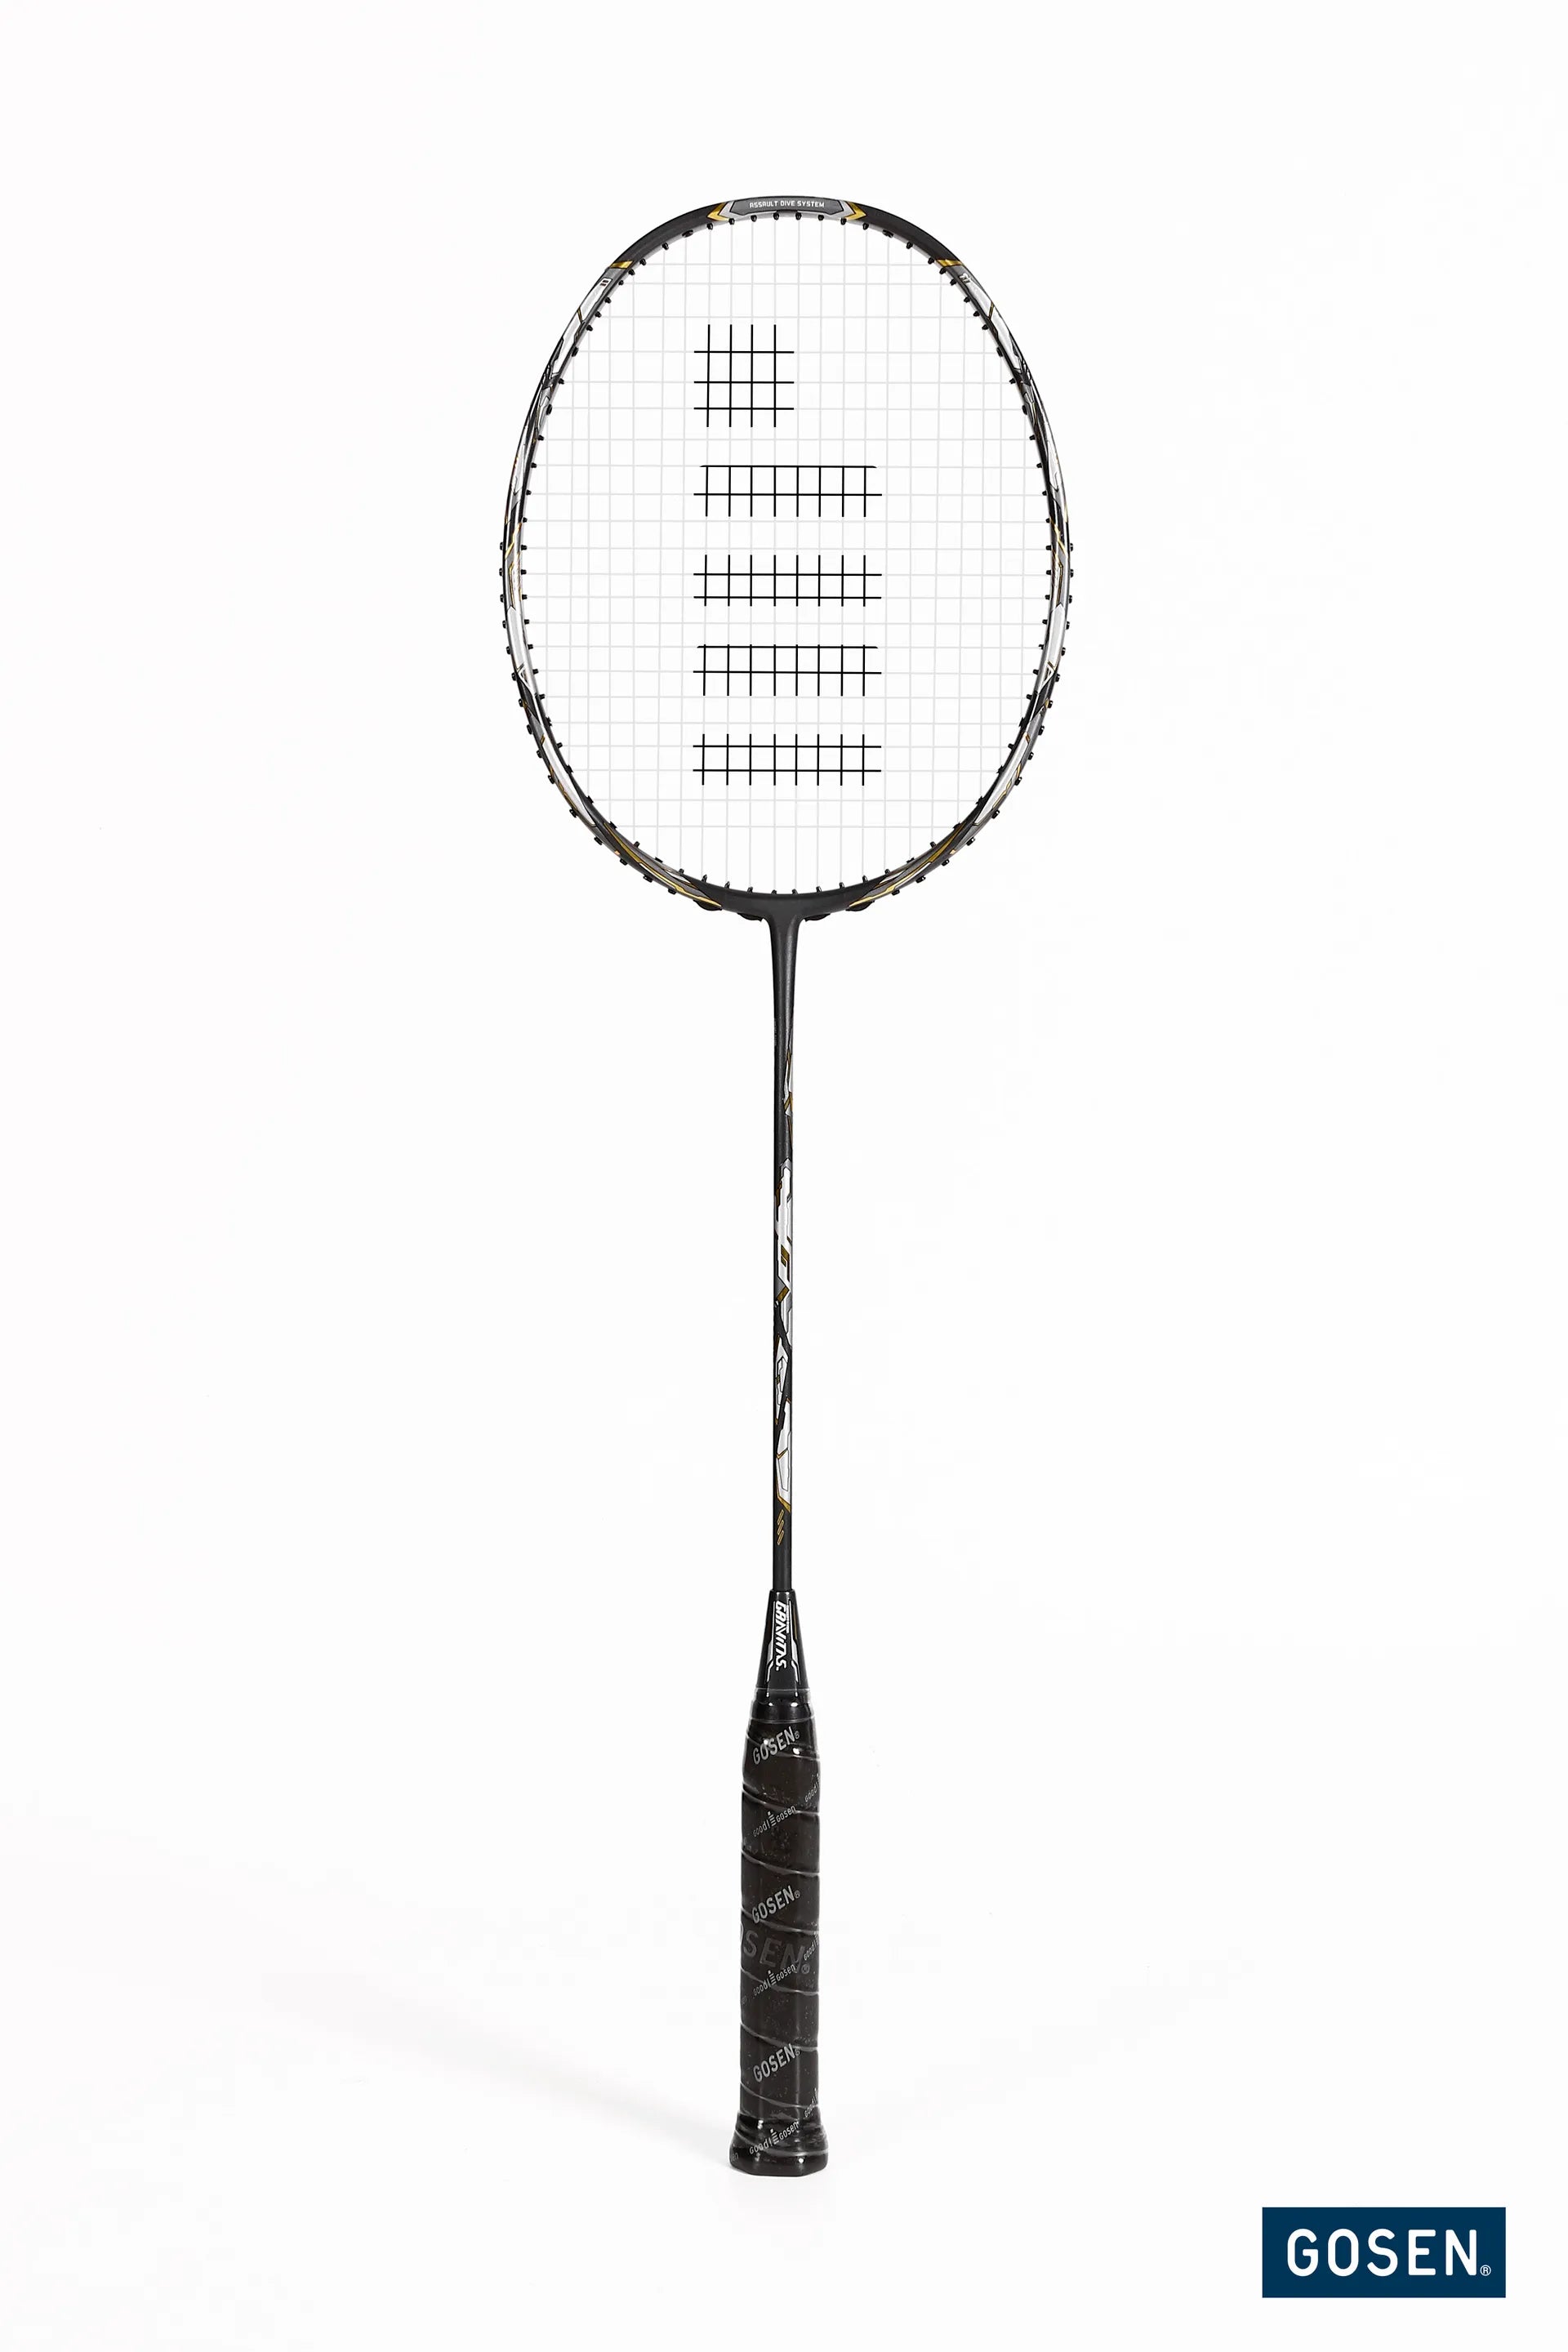 Gosen Badminton Rackets - TriplePointSports